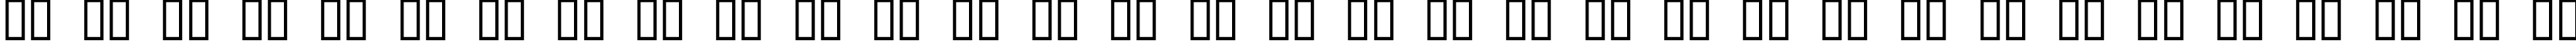 Пример написания русского алфавита шрифтом DesdemonaC